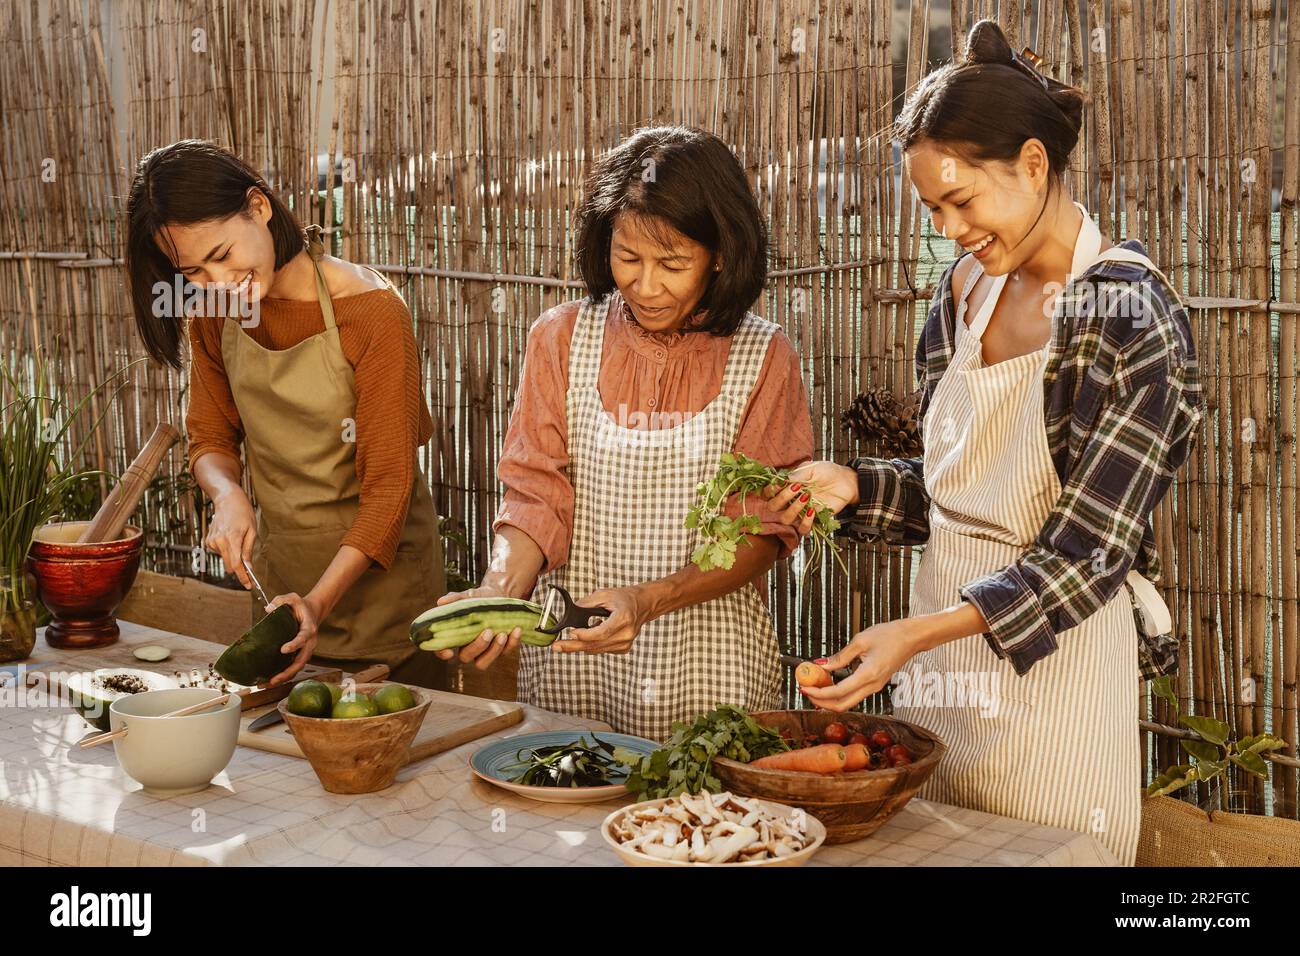 Felice famiglia del sud-est asiatico divertirsi a preparare la ricetta del cibo tailandese insieme nel patio della casa Foto Stock